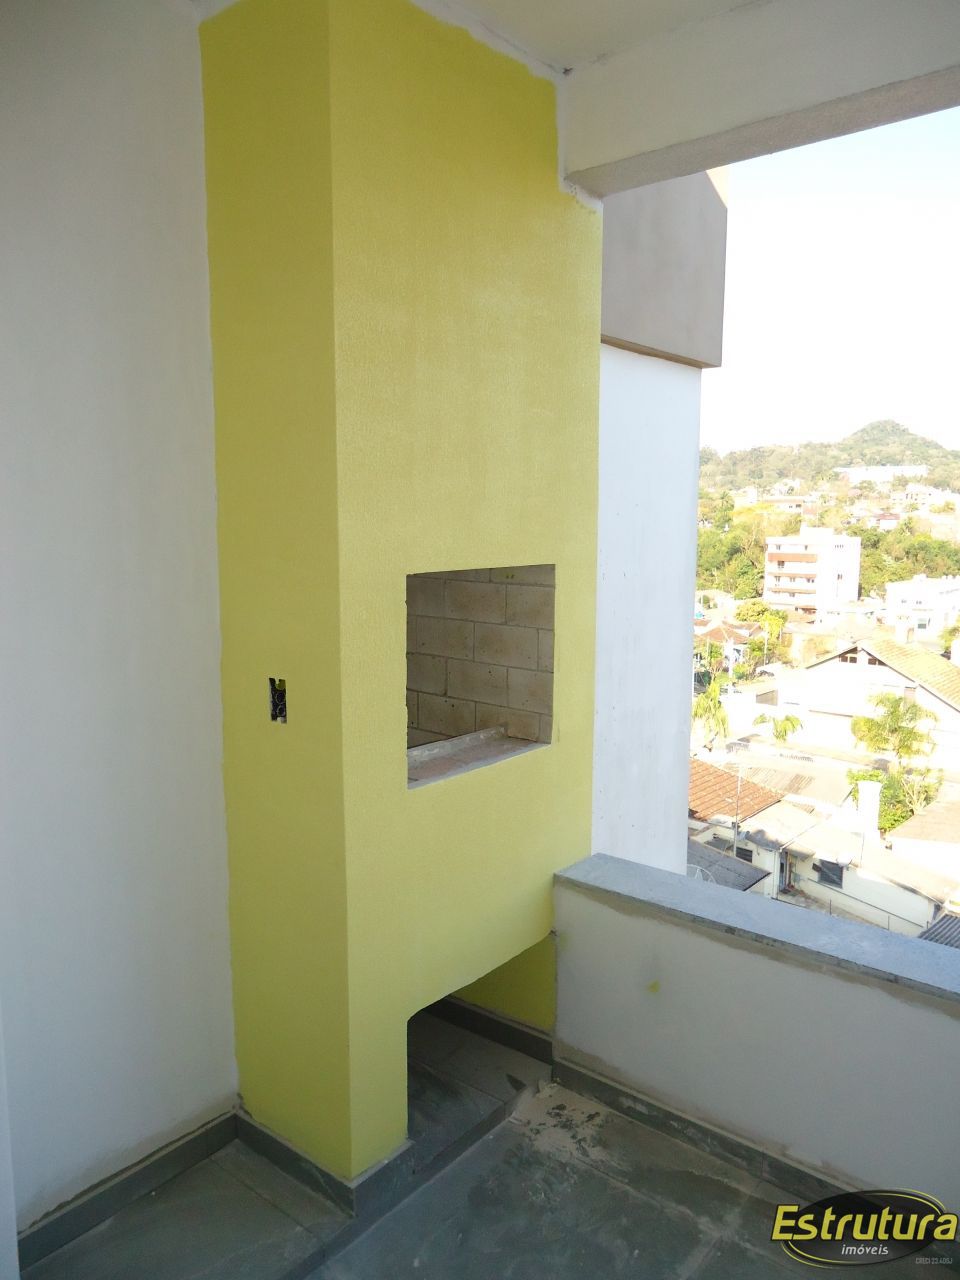 Apartamento com 2 Dormitórios à venda, 65 m² por R$ 290.000,00